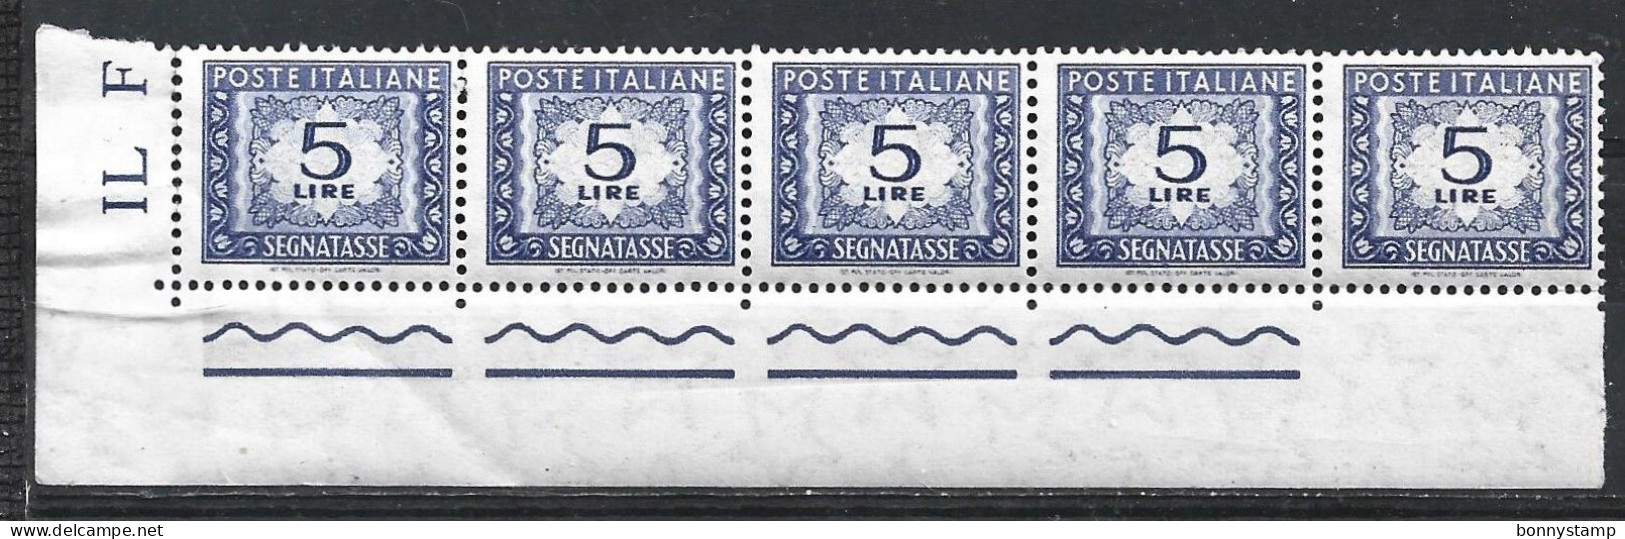 Repubblica Italiana, 1955/66 - 5 Lire Segnatasse, Fil. Stelle, Blocco Di 5 - Nr.111 MNH** - Taxe